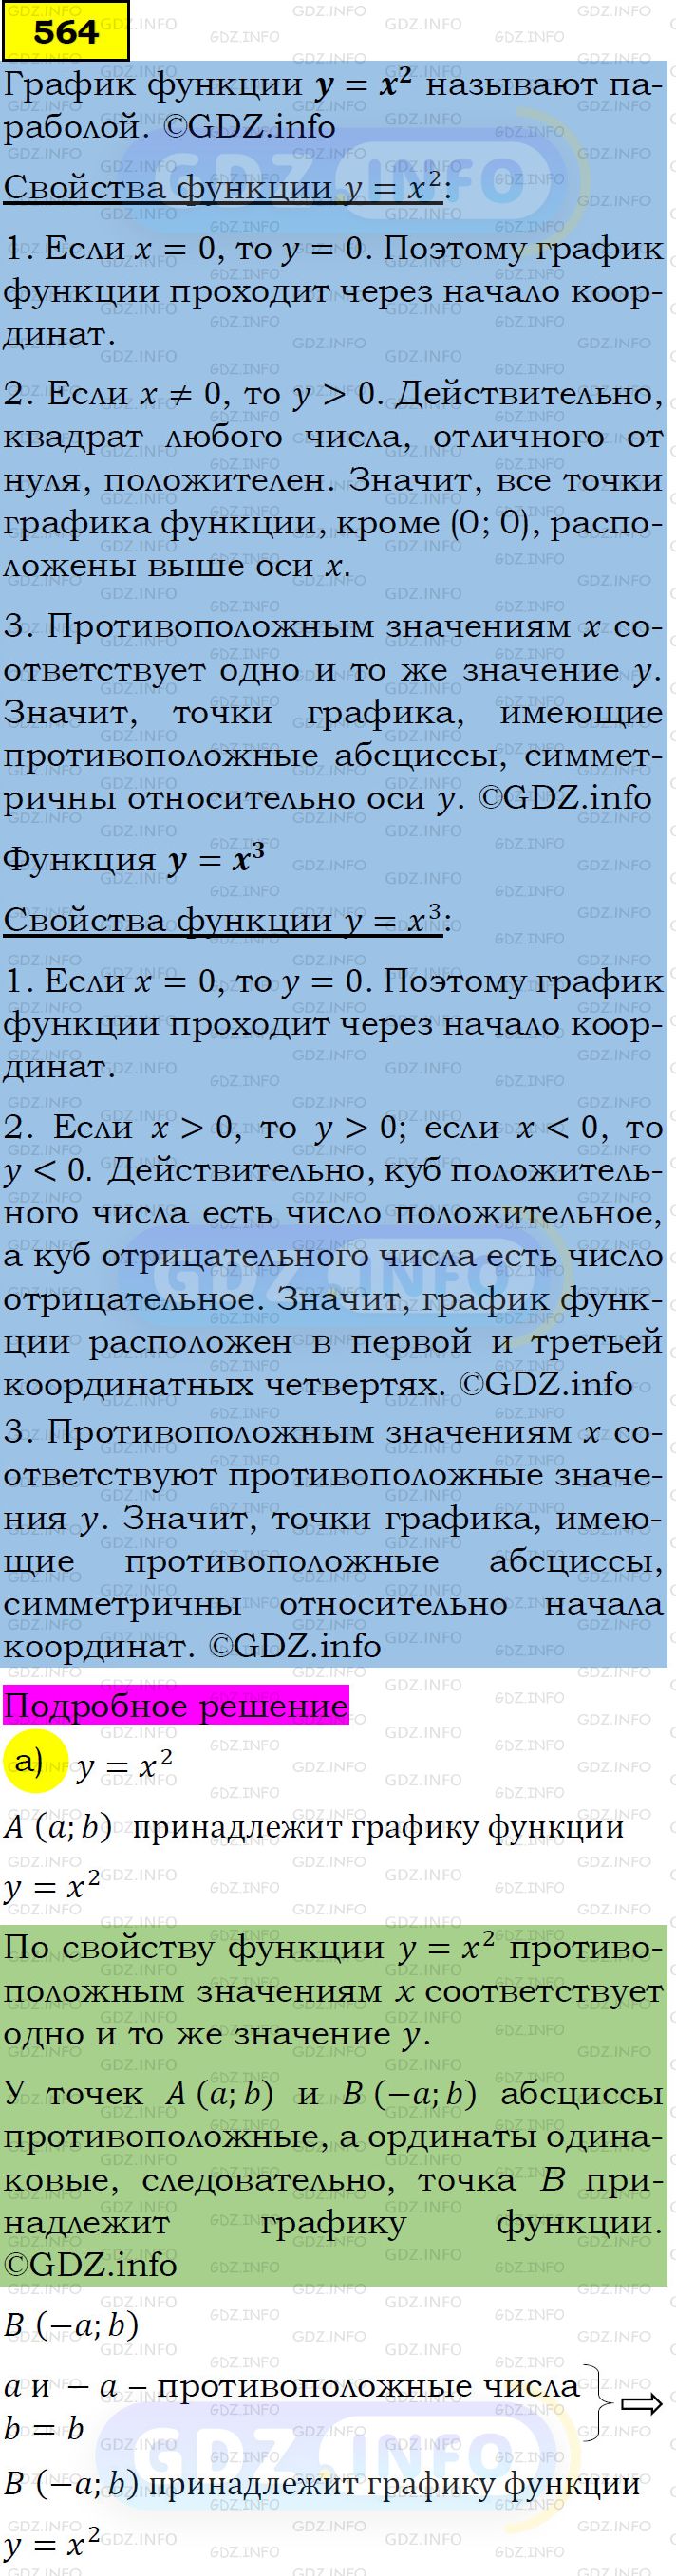 Фото подробного решения: Номер задания №564 из ГДЗ по Алгебре 7 класс: Макарычев Ю.Н.